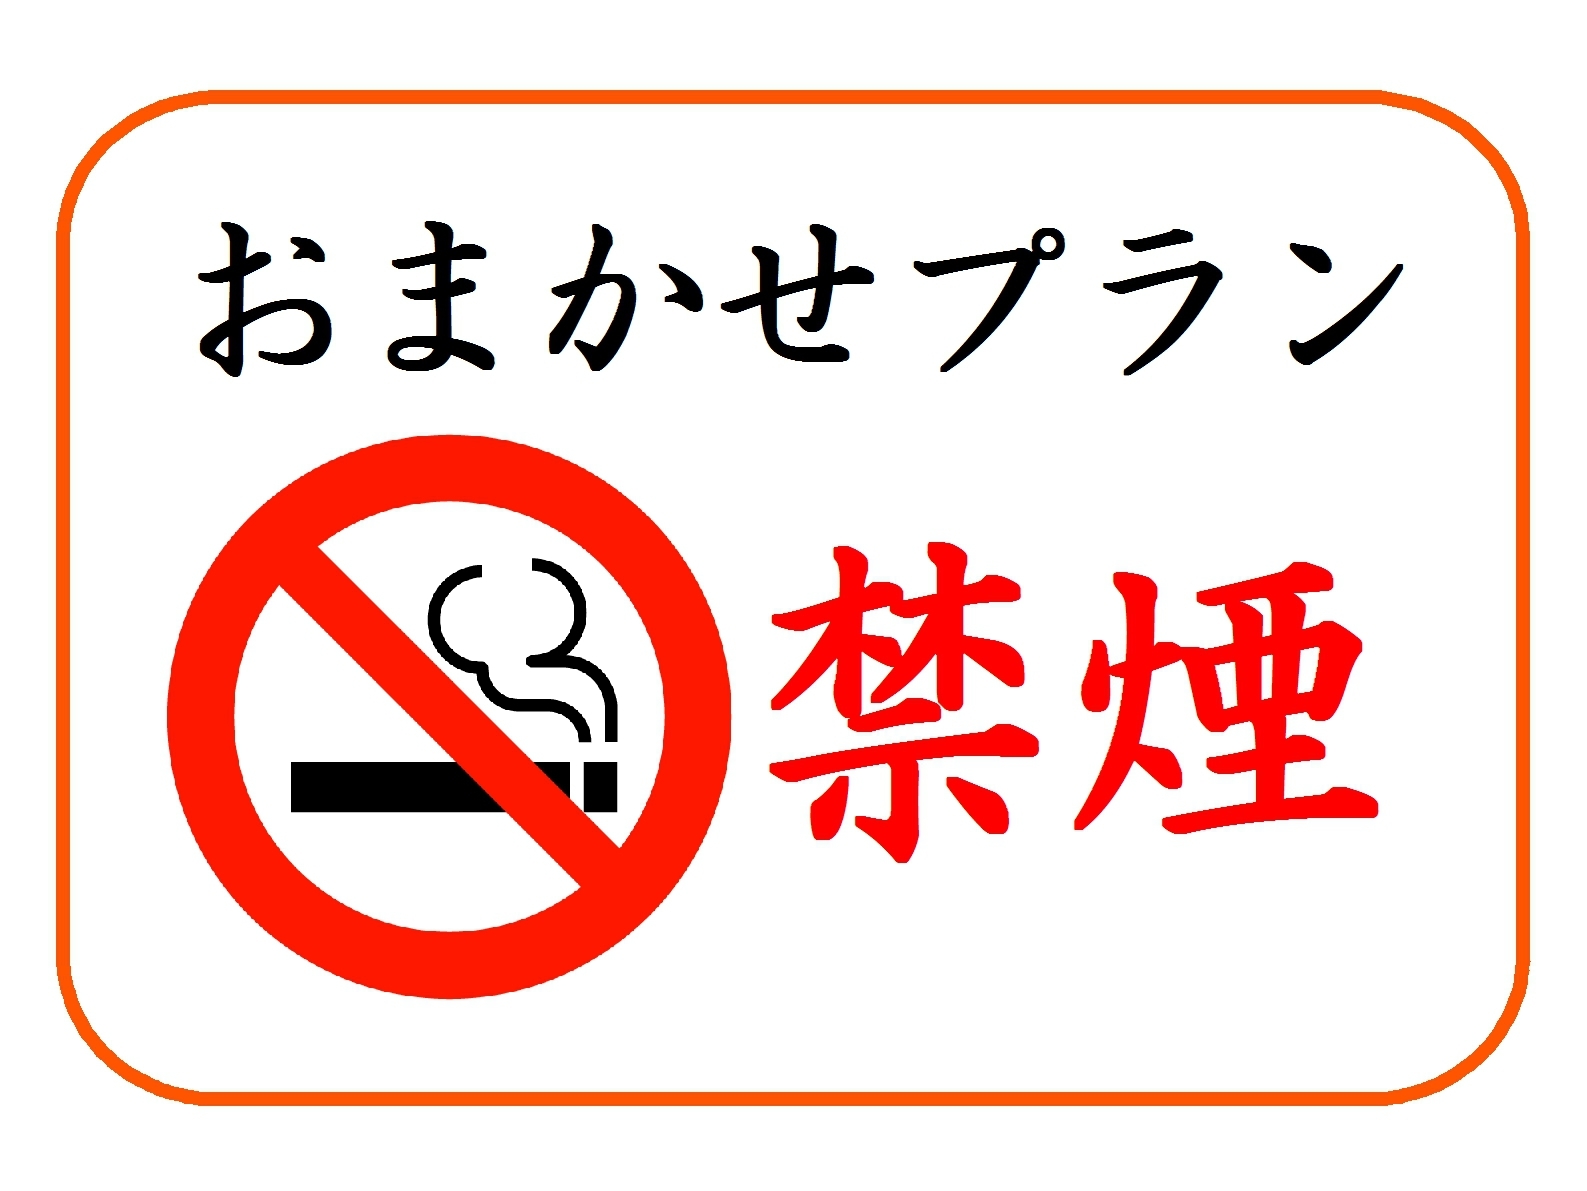 ◎当日WEB予約限定【禁煙】お部屋タイプおまかせプラン